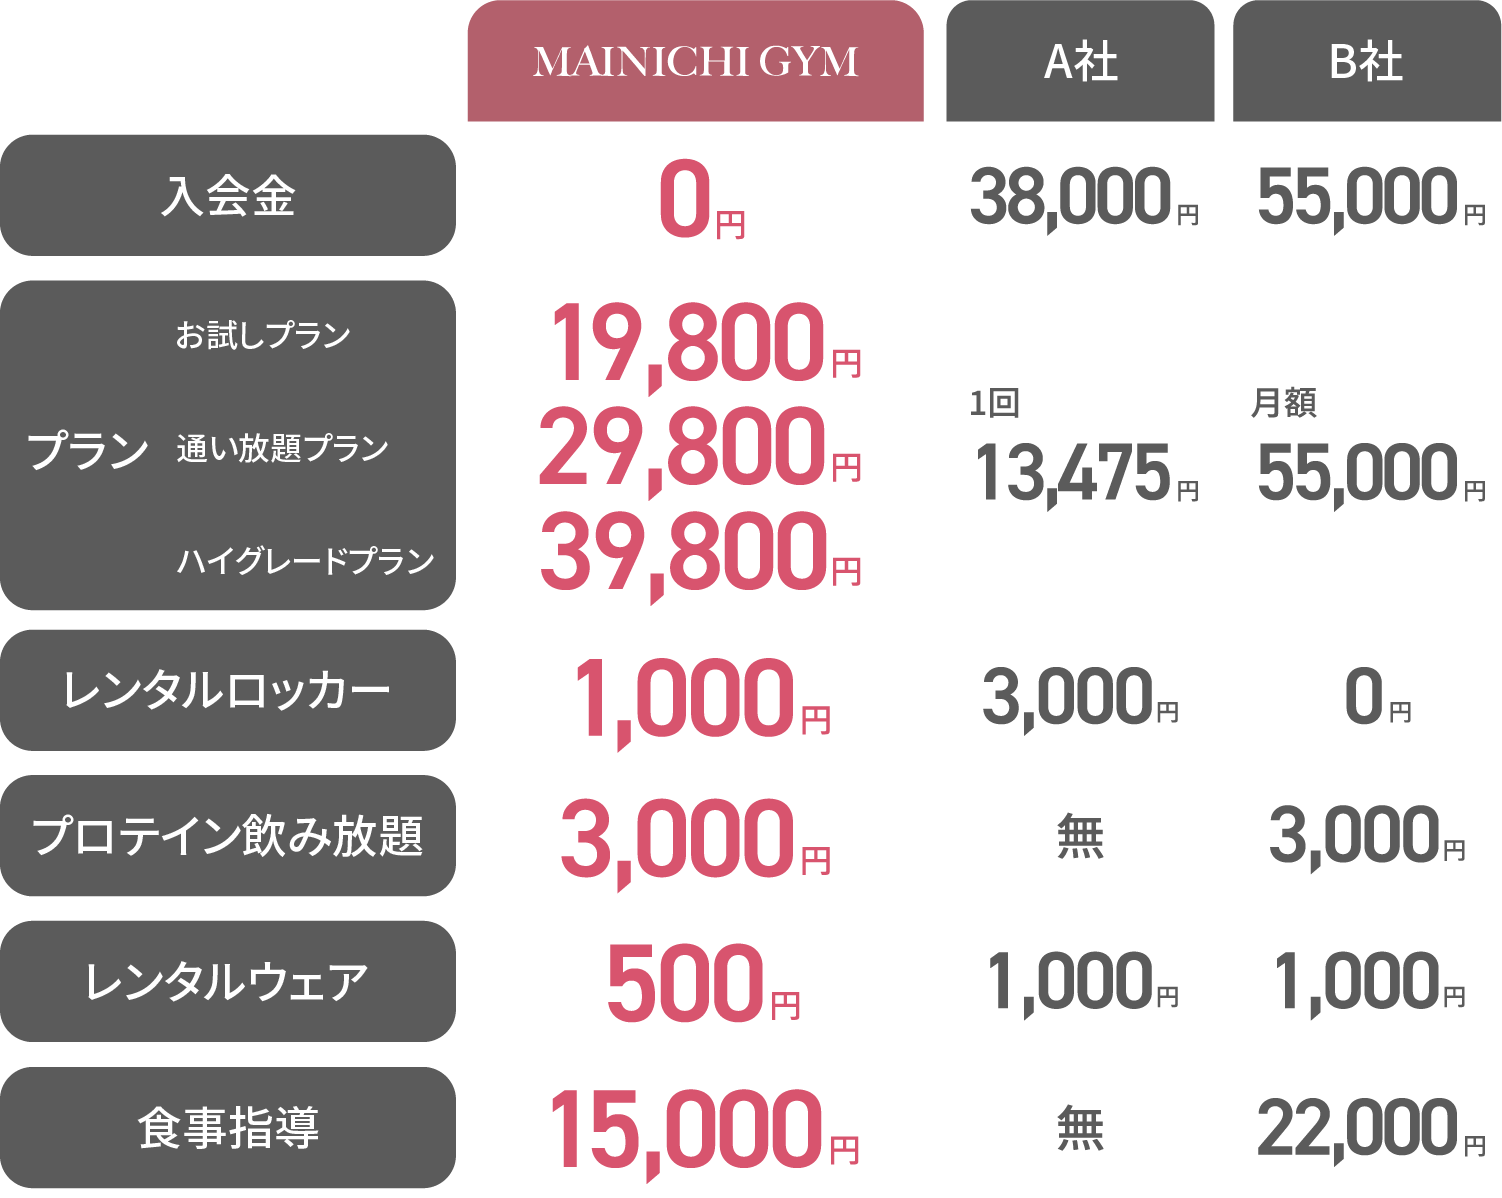 大手R社 1ヶ月あたり164,000円、MAINICHI GYM 1ヶ月あたり29,800円 約1/5